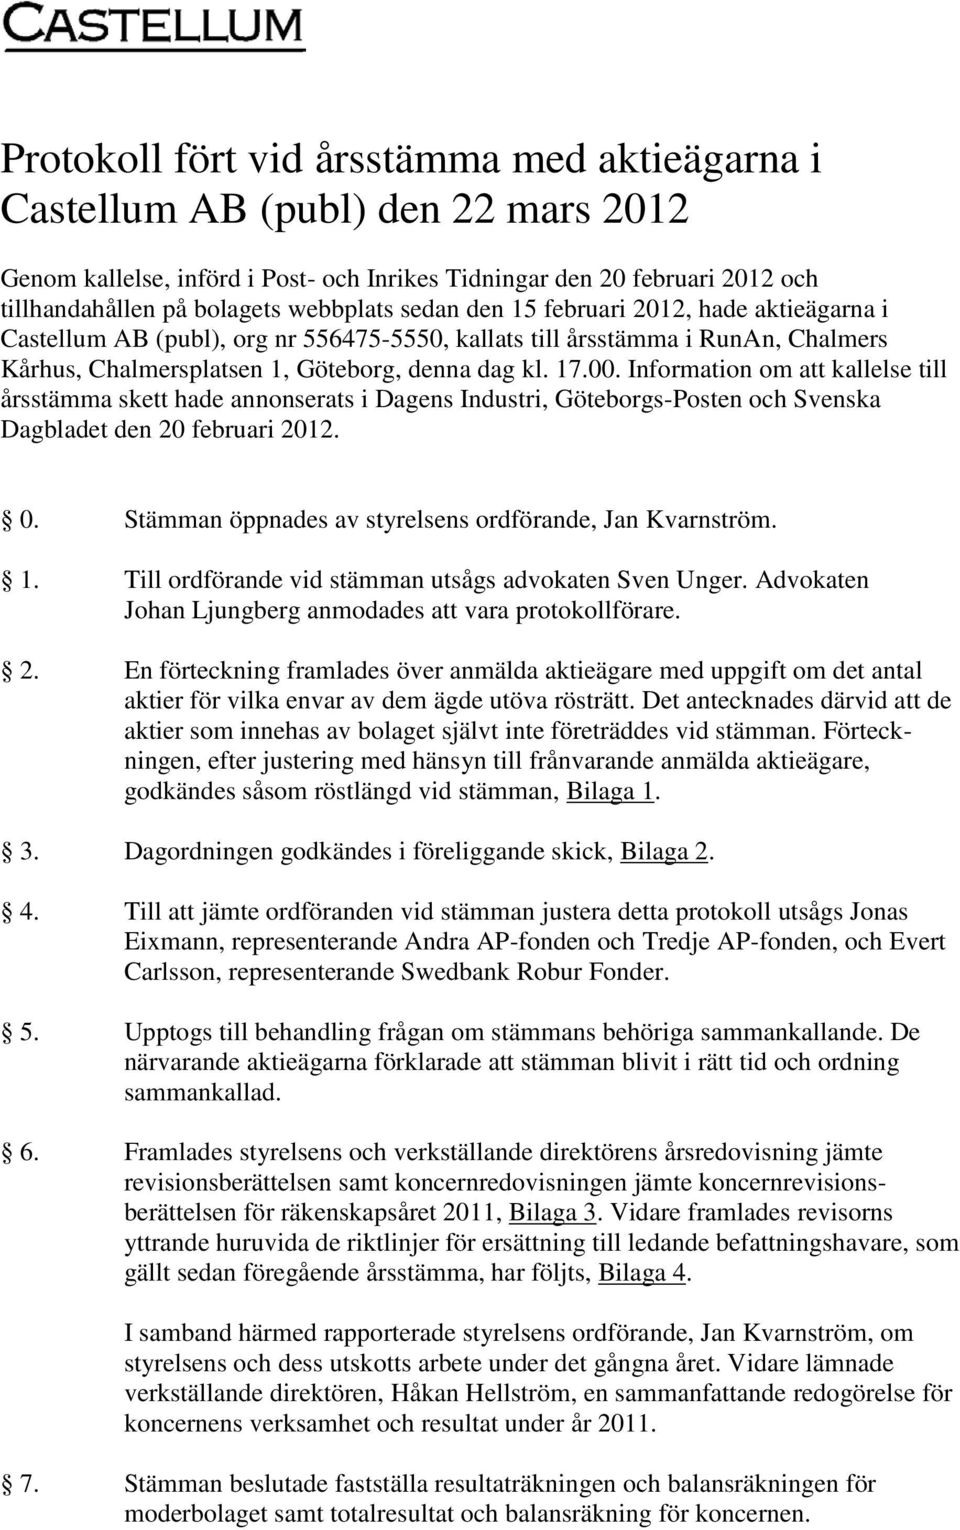 Information om att kallelse till årsstämma skett hade annonserats i Dagens Industri, Göteborgs-Posten och Svenska Dagbladet den 20 februari 2012. 0.